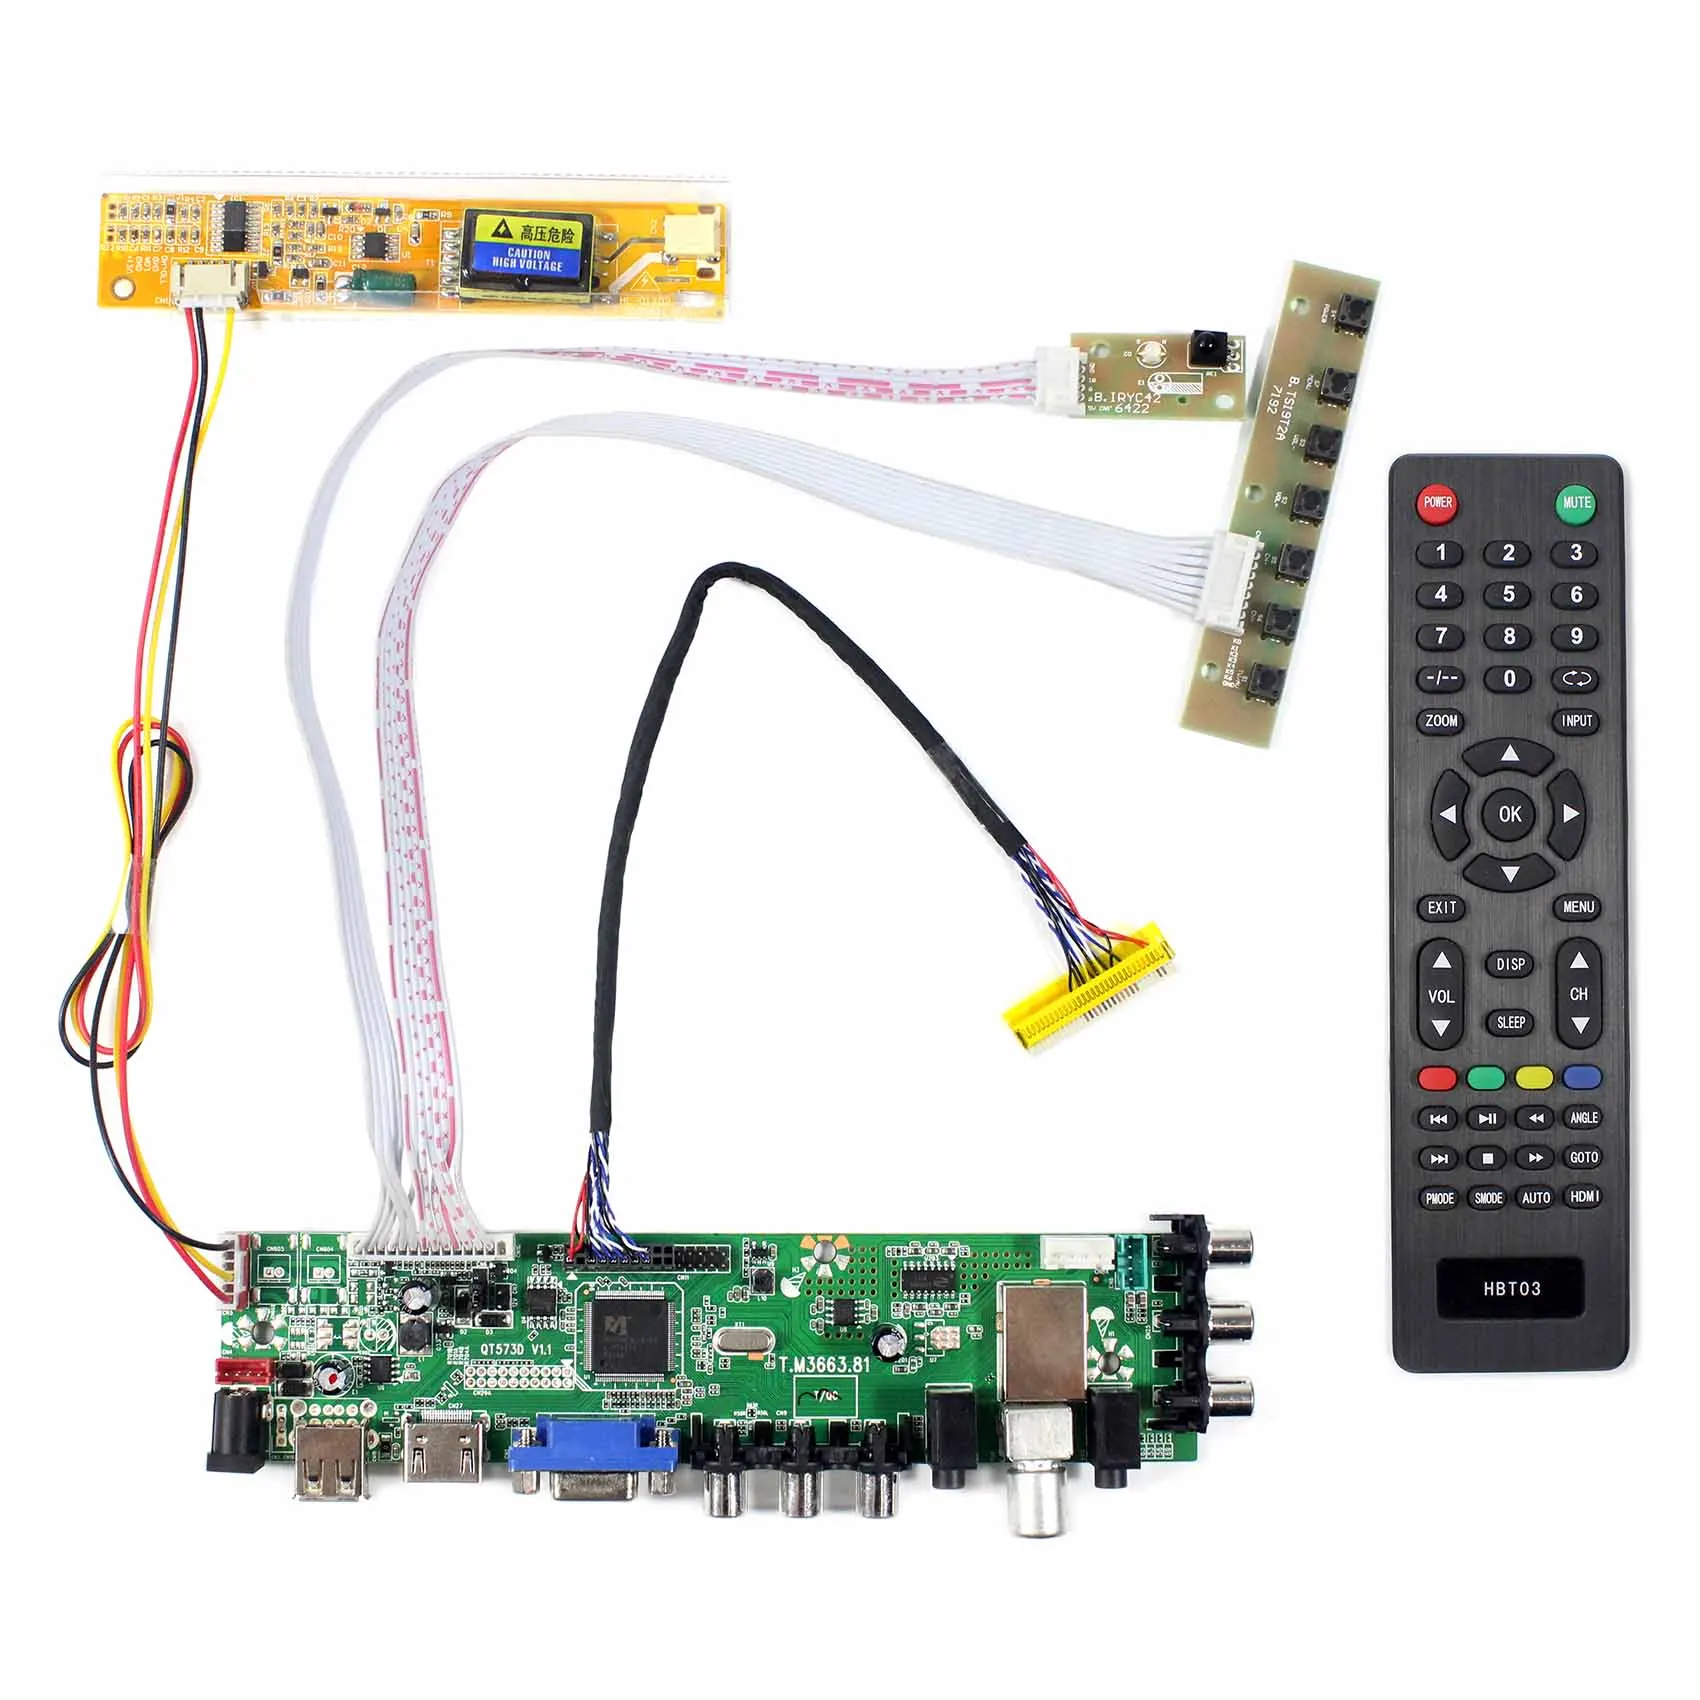 

HD-MI VGA AV USB ATV DTV LCD Controller Board Work With 14.1inch 15.4inch 1280x800 LTN141AT01 T02 T03 T07 T10 B154EW01 W02 etc.